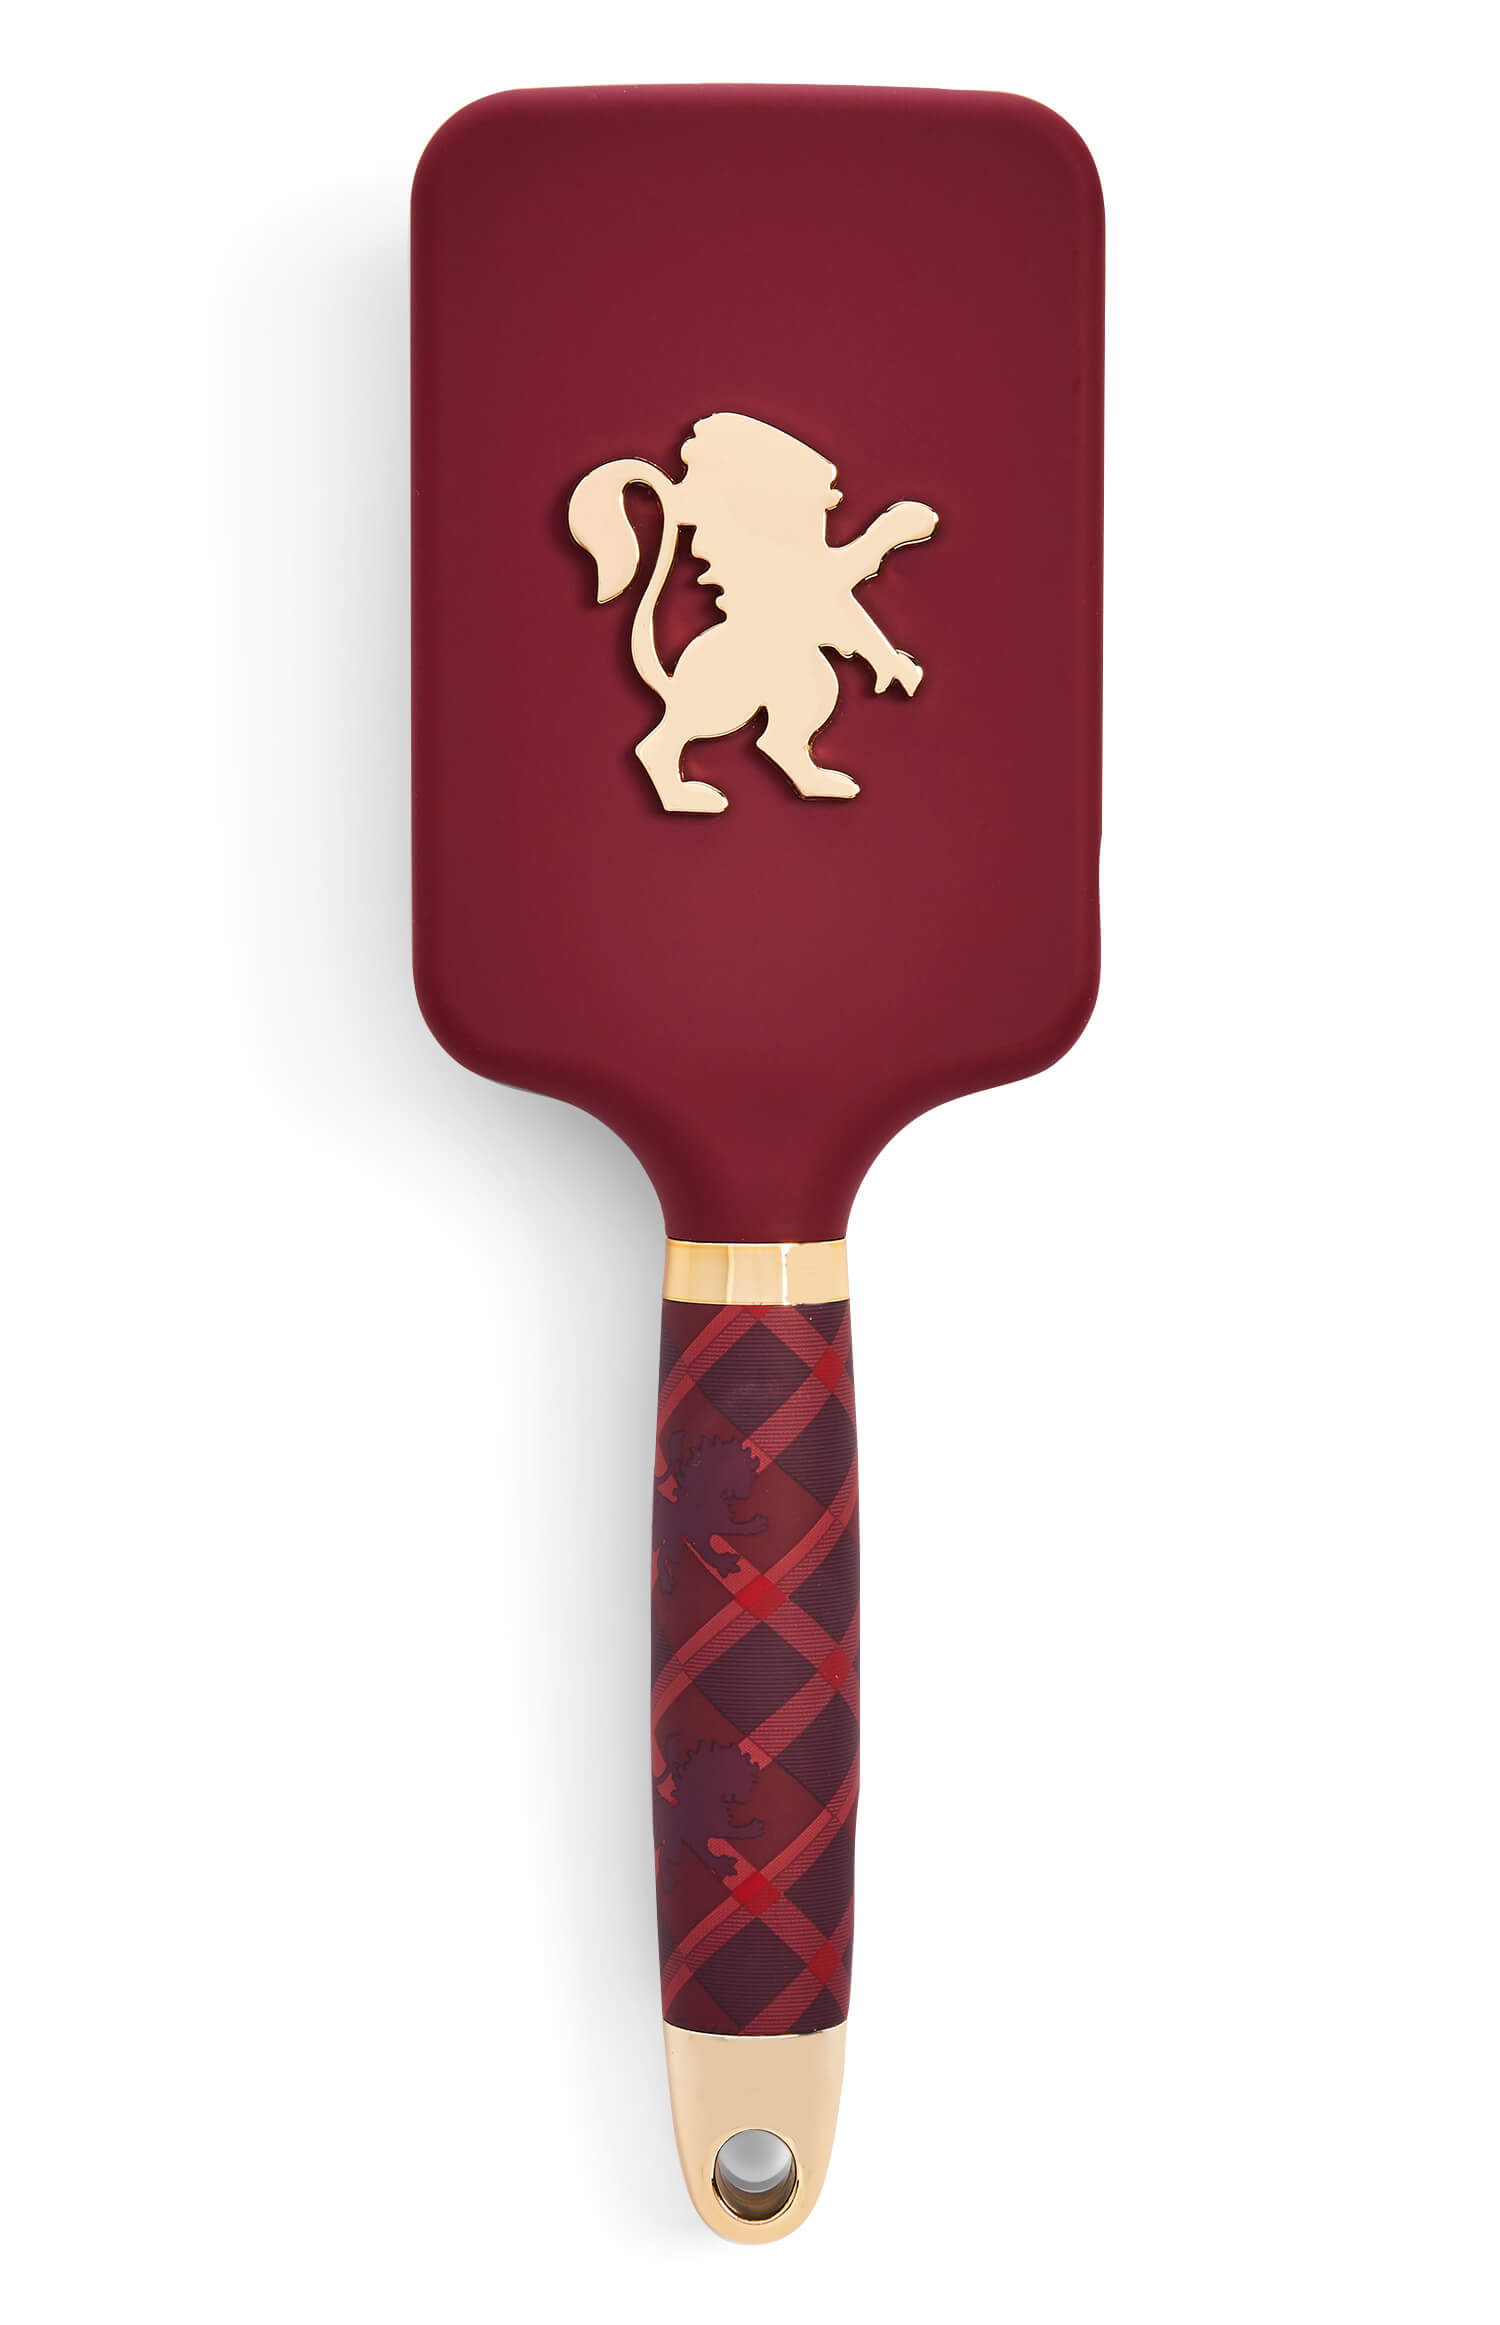 Harry Potter en Primark, estos son nuestros accesorios de belleza preferidos - Cepillo rojo 4E